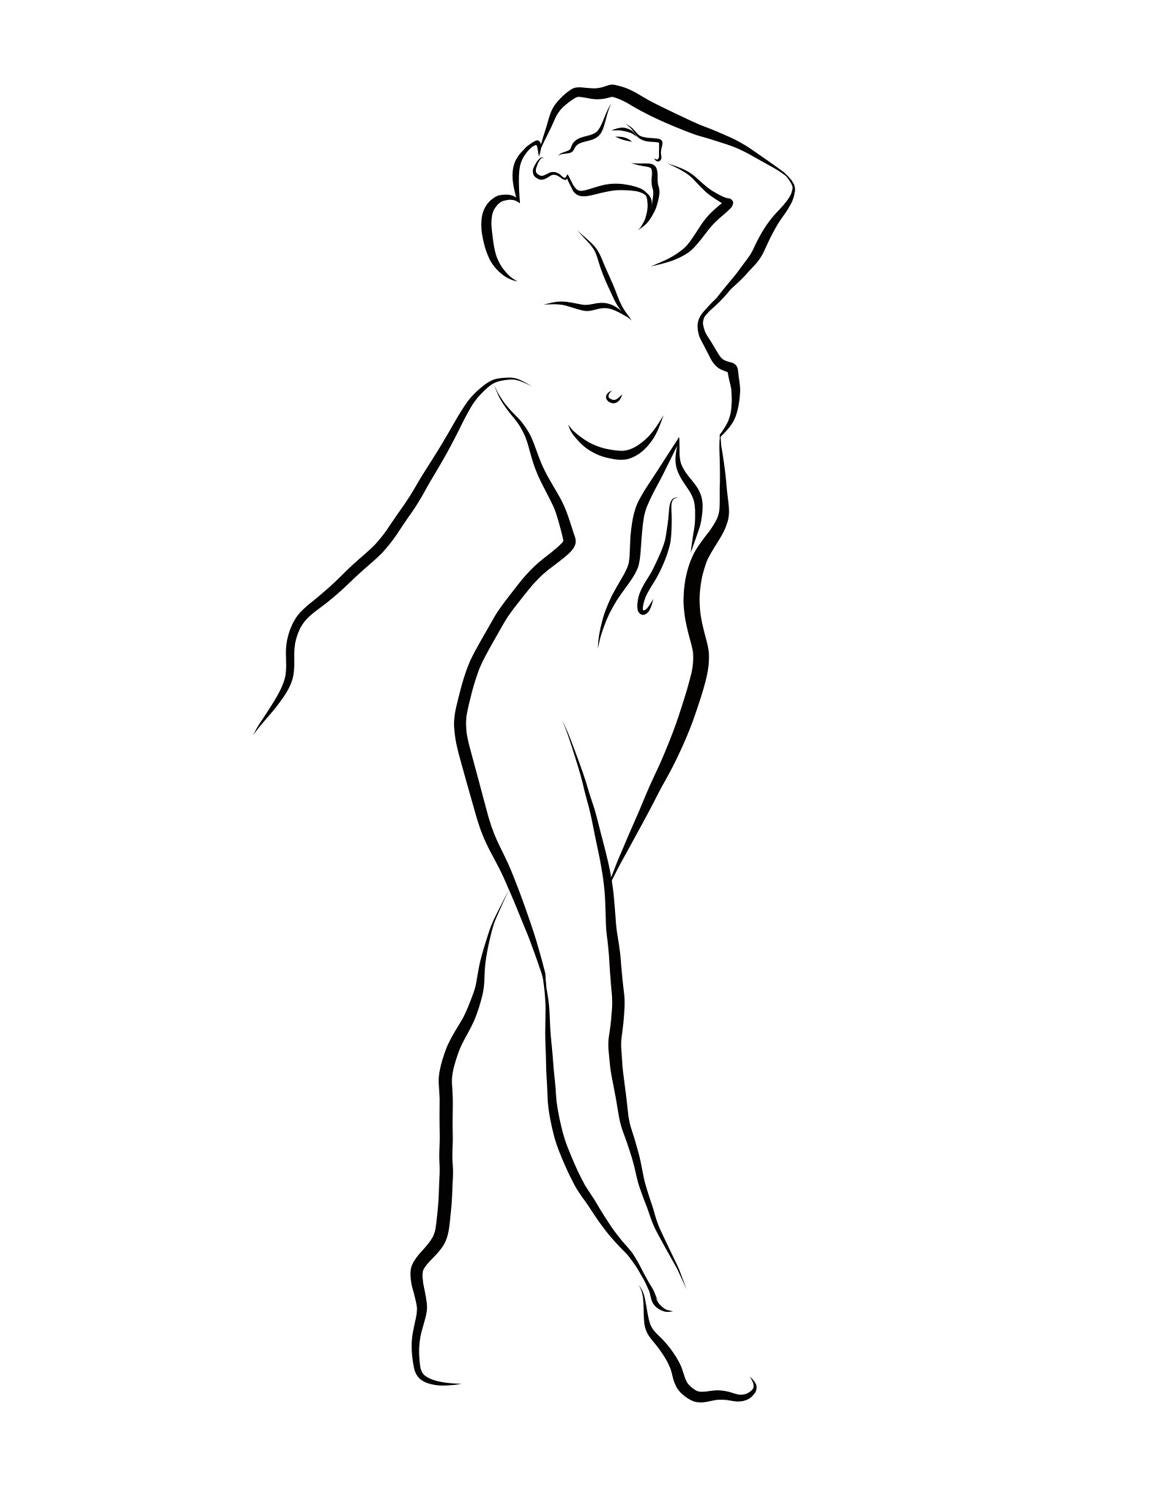 Haiku #33 - Digital Vector Drawing Striding Female Nude Woman Figure Hand Raised - Art by Michael Binkley